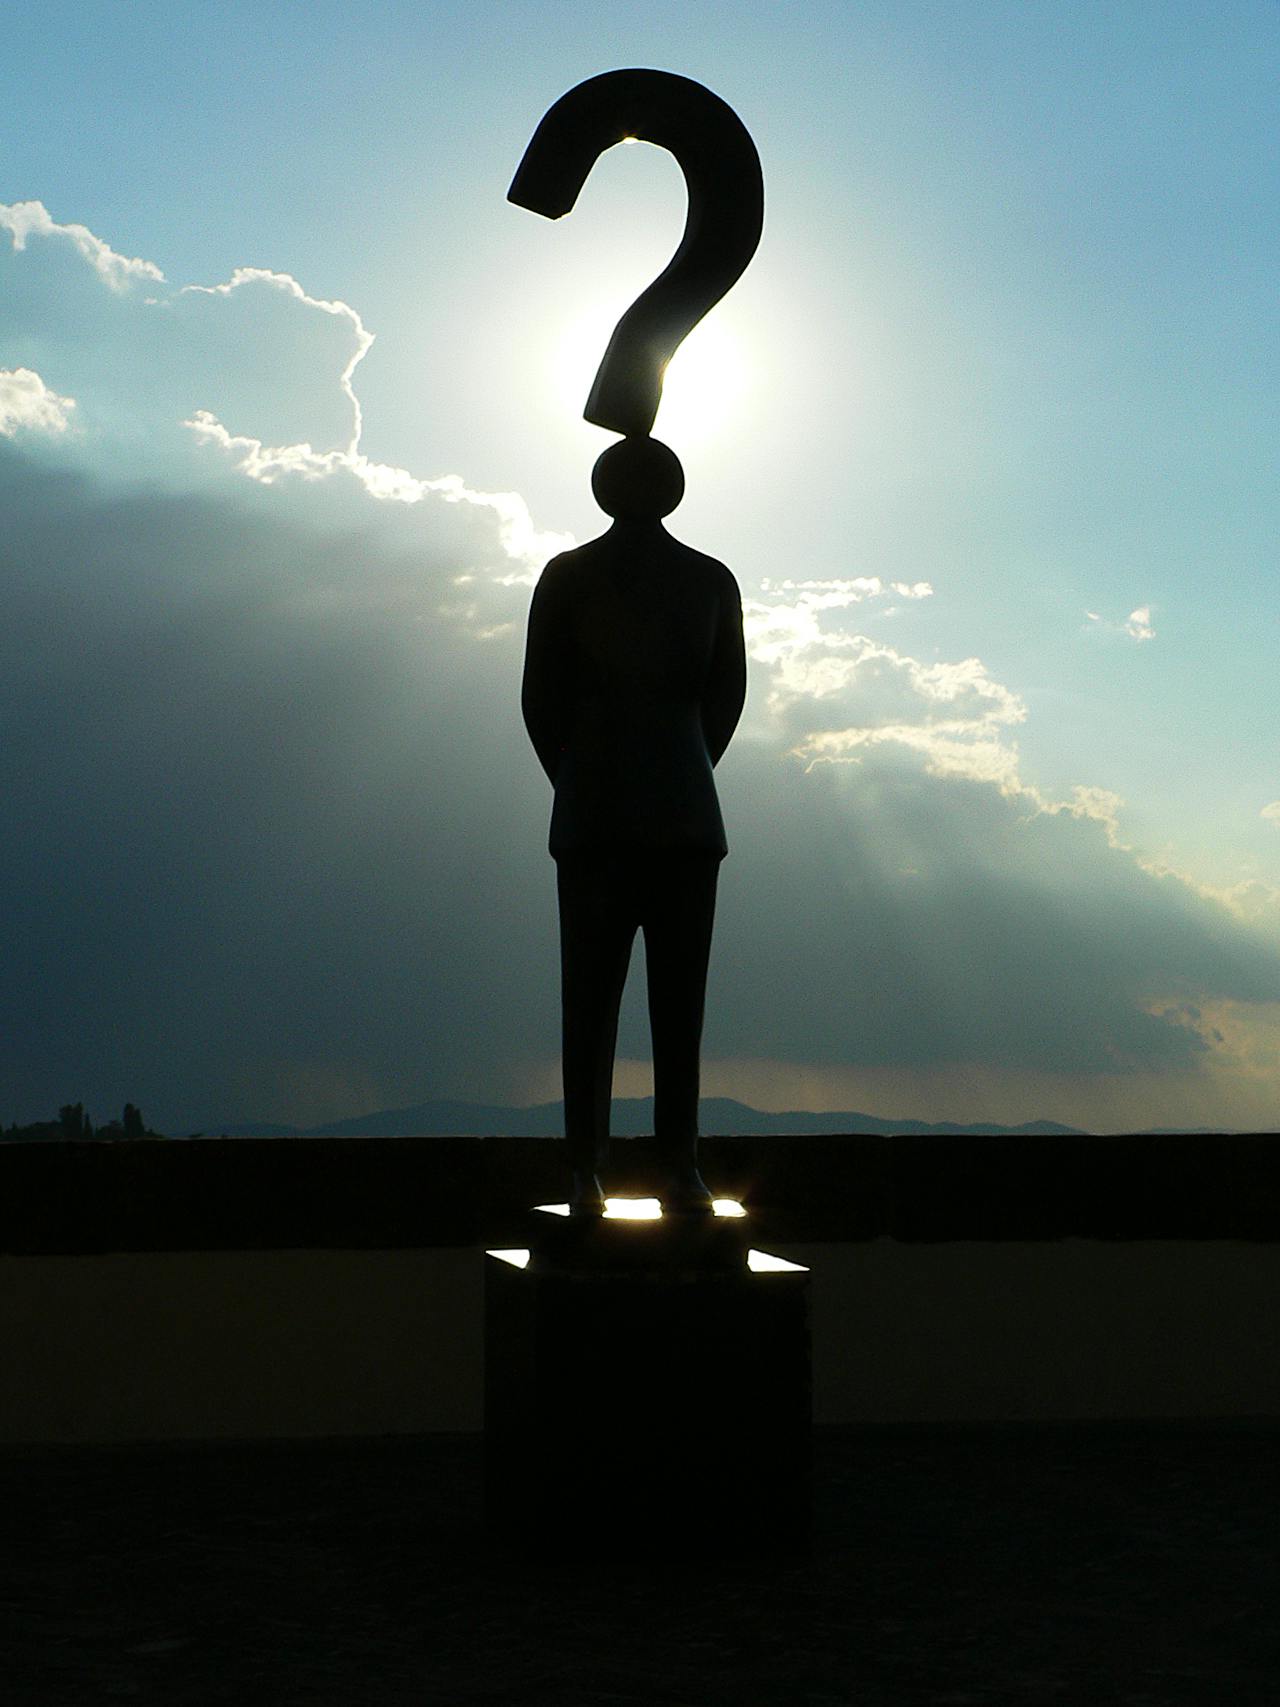 Een silhouette van een persoon met een vraagteken boven het hoofd. Er zijn wolken op de achtergrond.